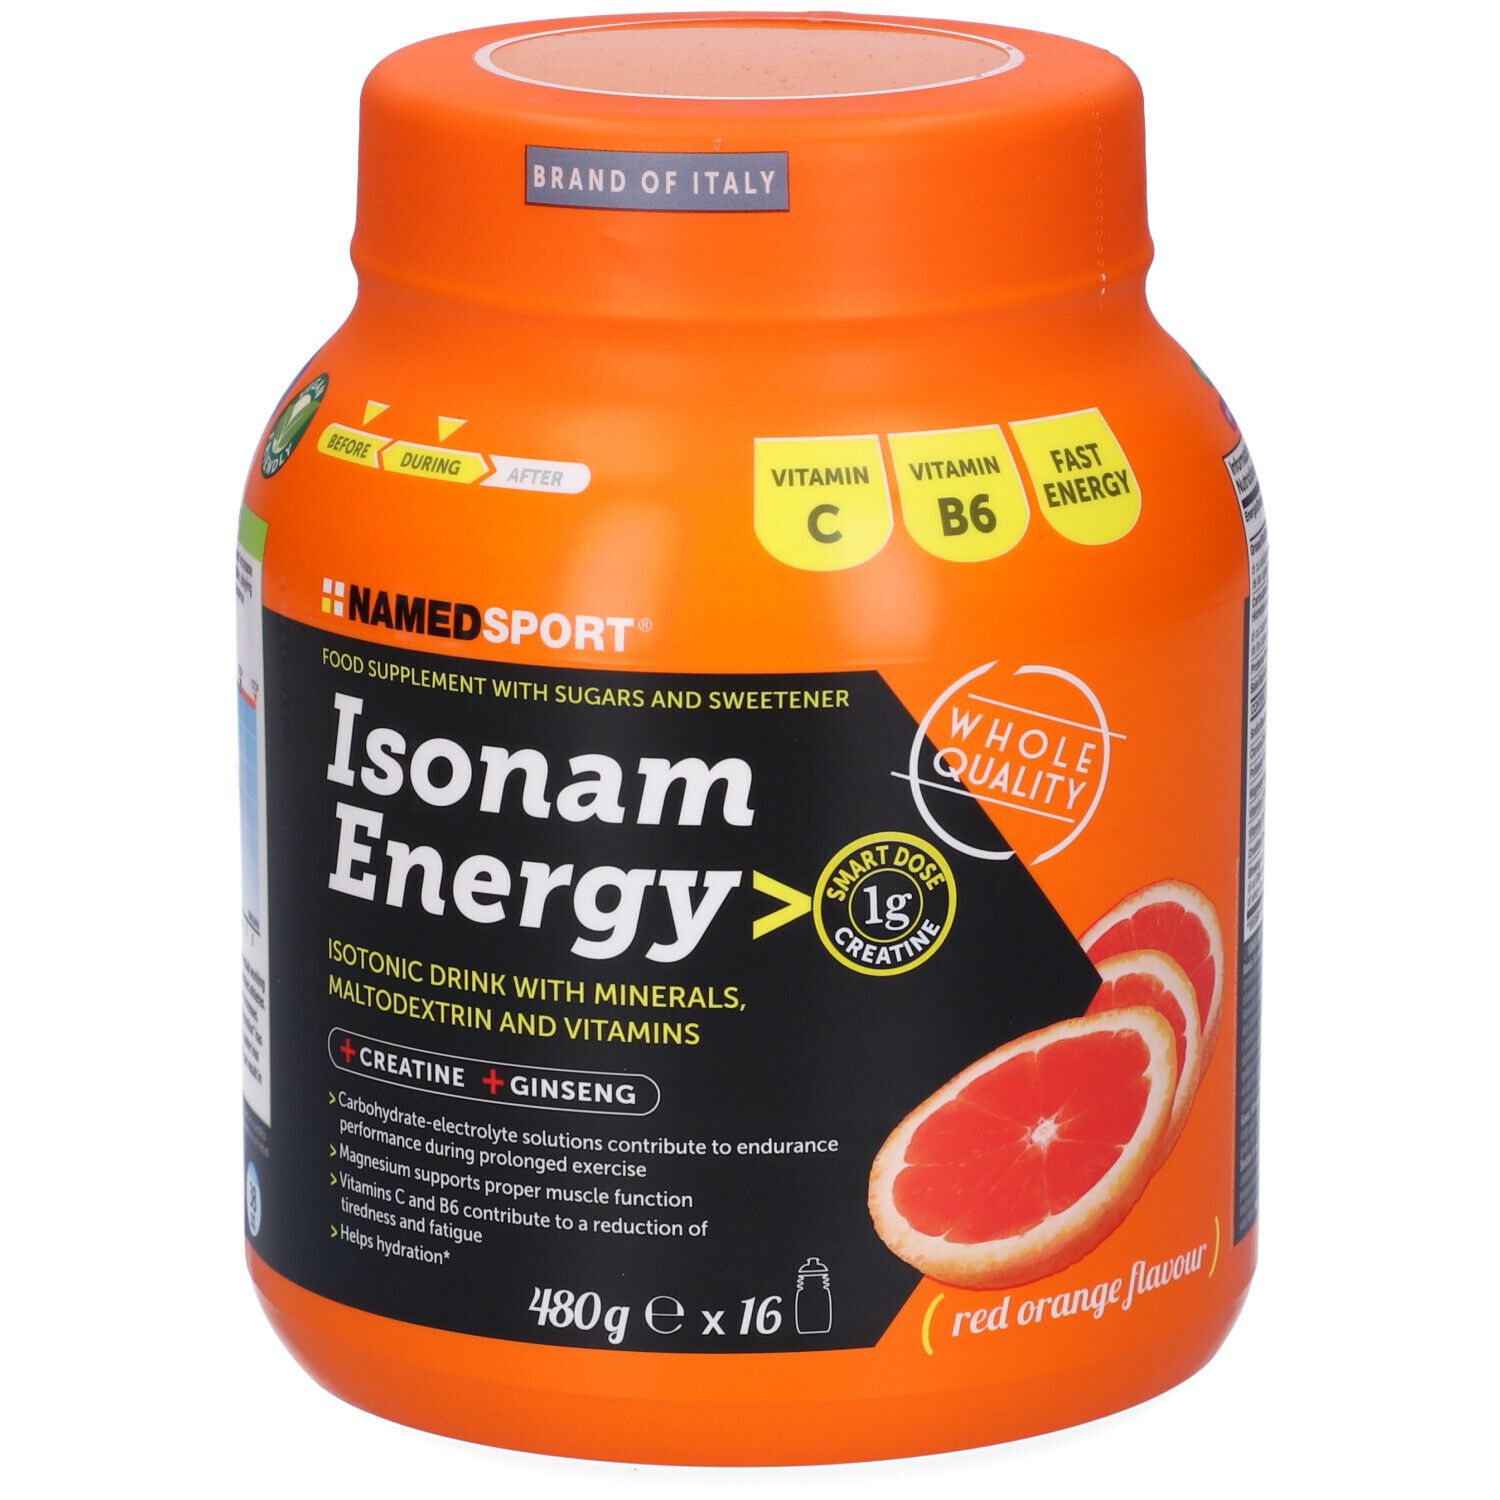 NAMED SPORT® Isonam Energy